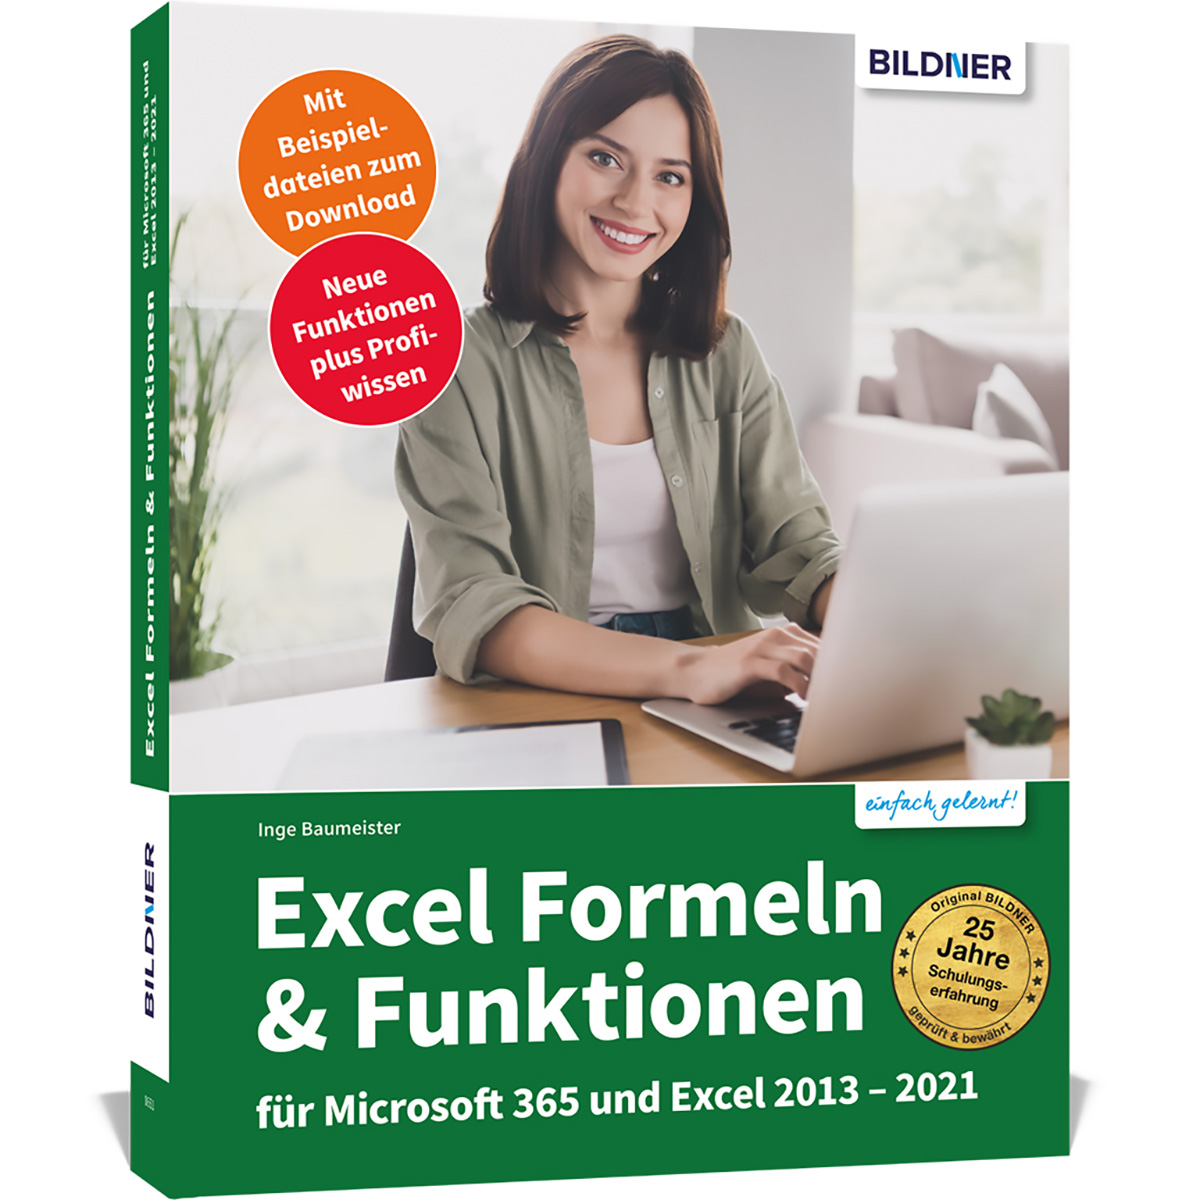 Microsoft Excel 2013-2021 365 Funktionen Formeln & Excel für und